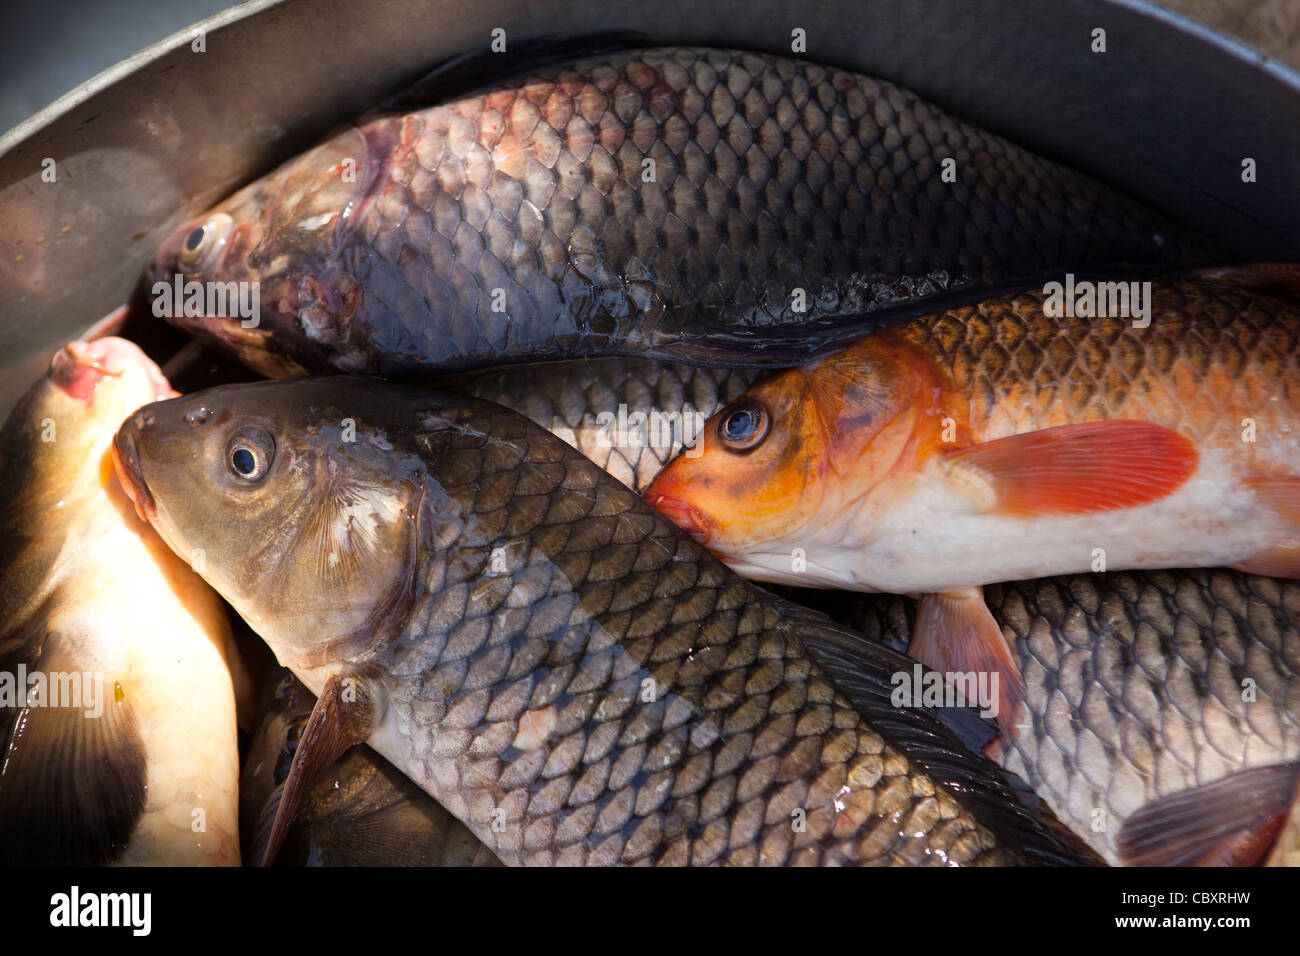 Indien, Manipur, Imphal, Loktak See Sendra Insel Fisch frisch Kamalcalp (Graskarpfen) warten auf den Markt gehen Stockfoto